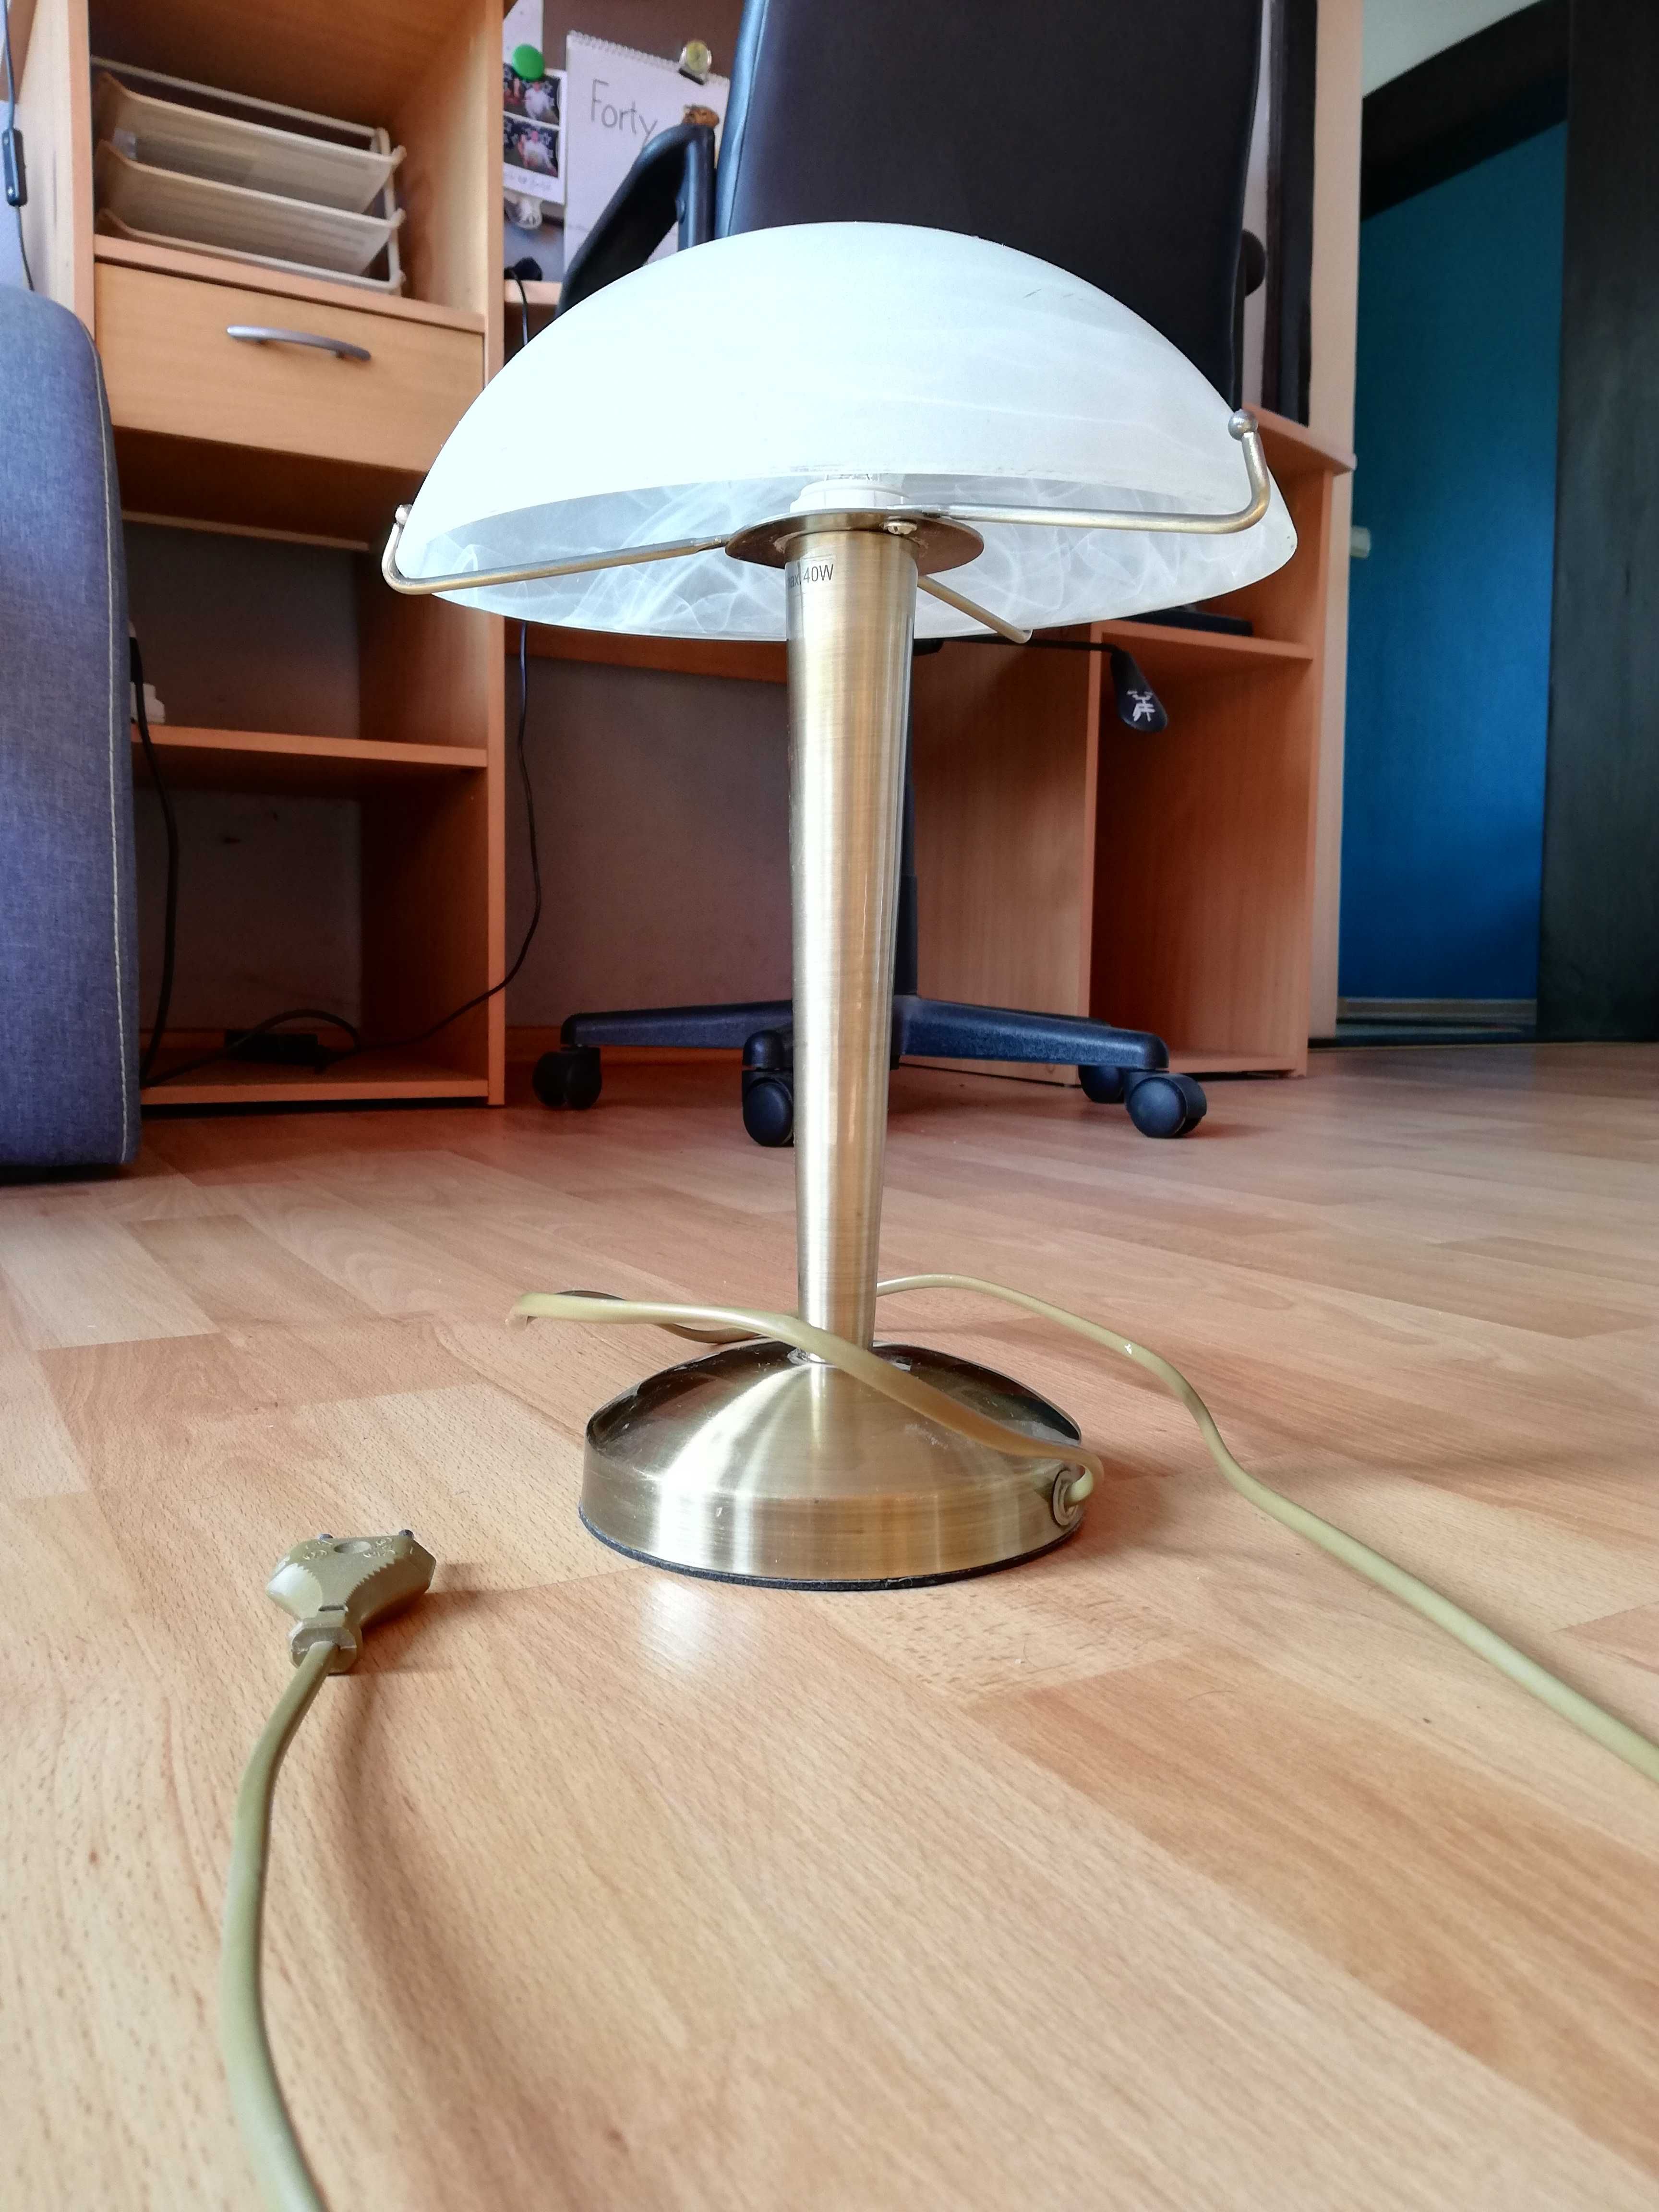 Lampka nocna, lampka biurowa, włączana dotykiem